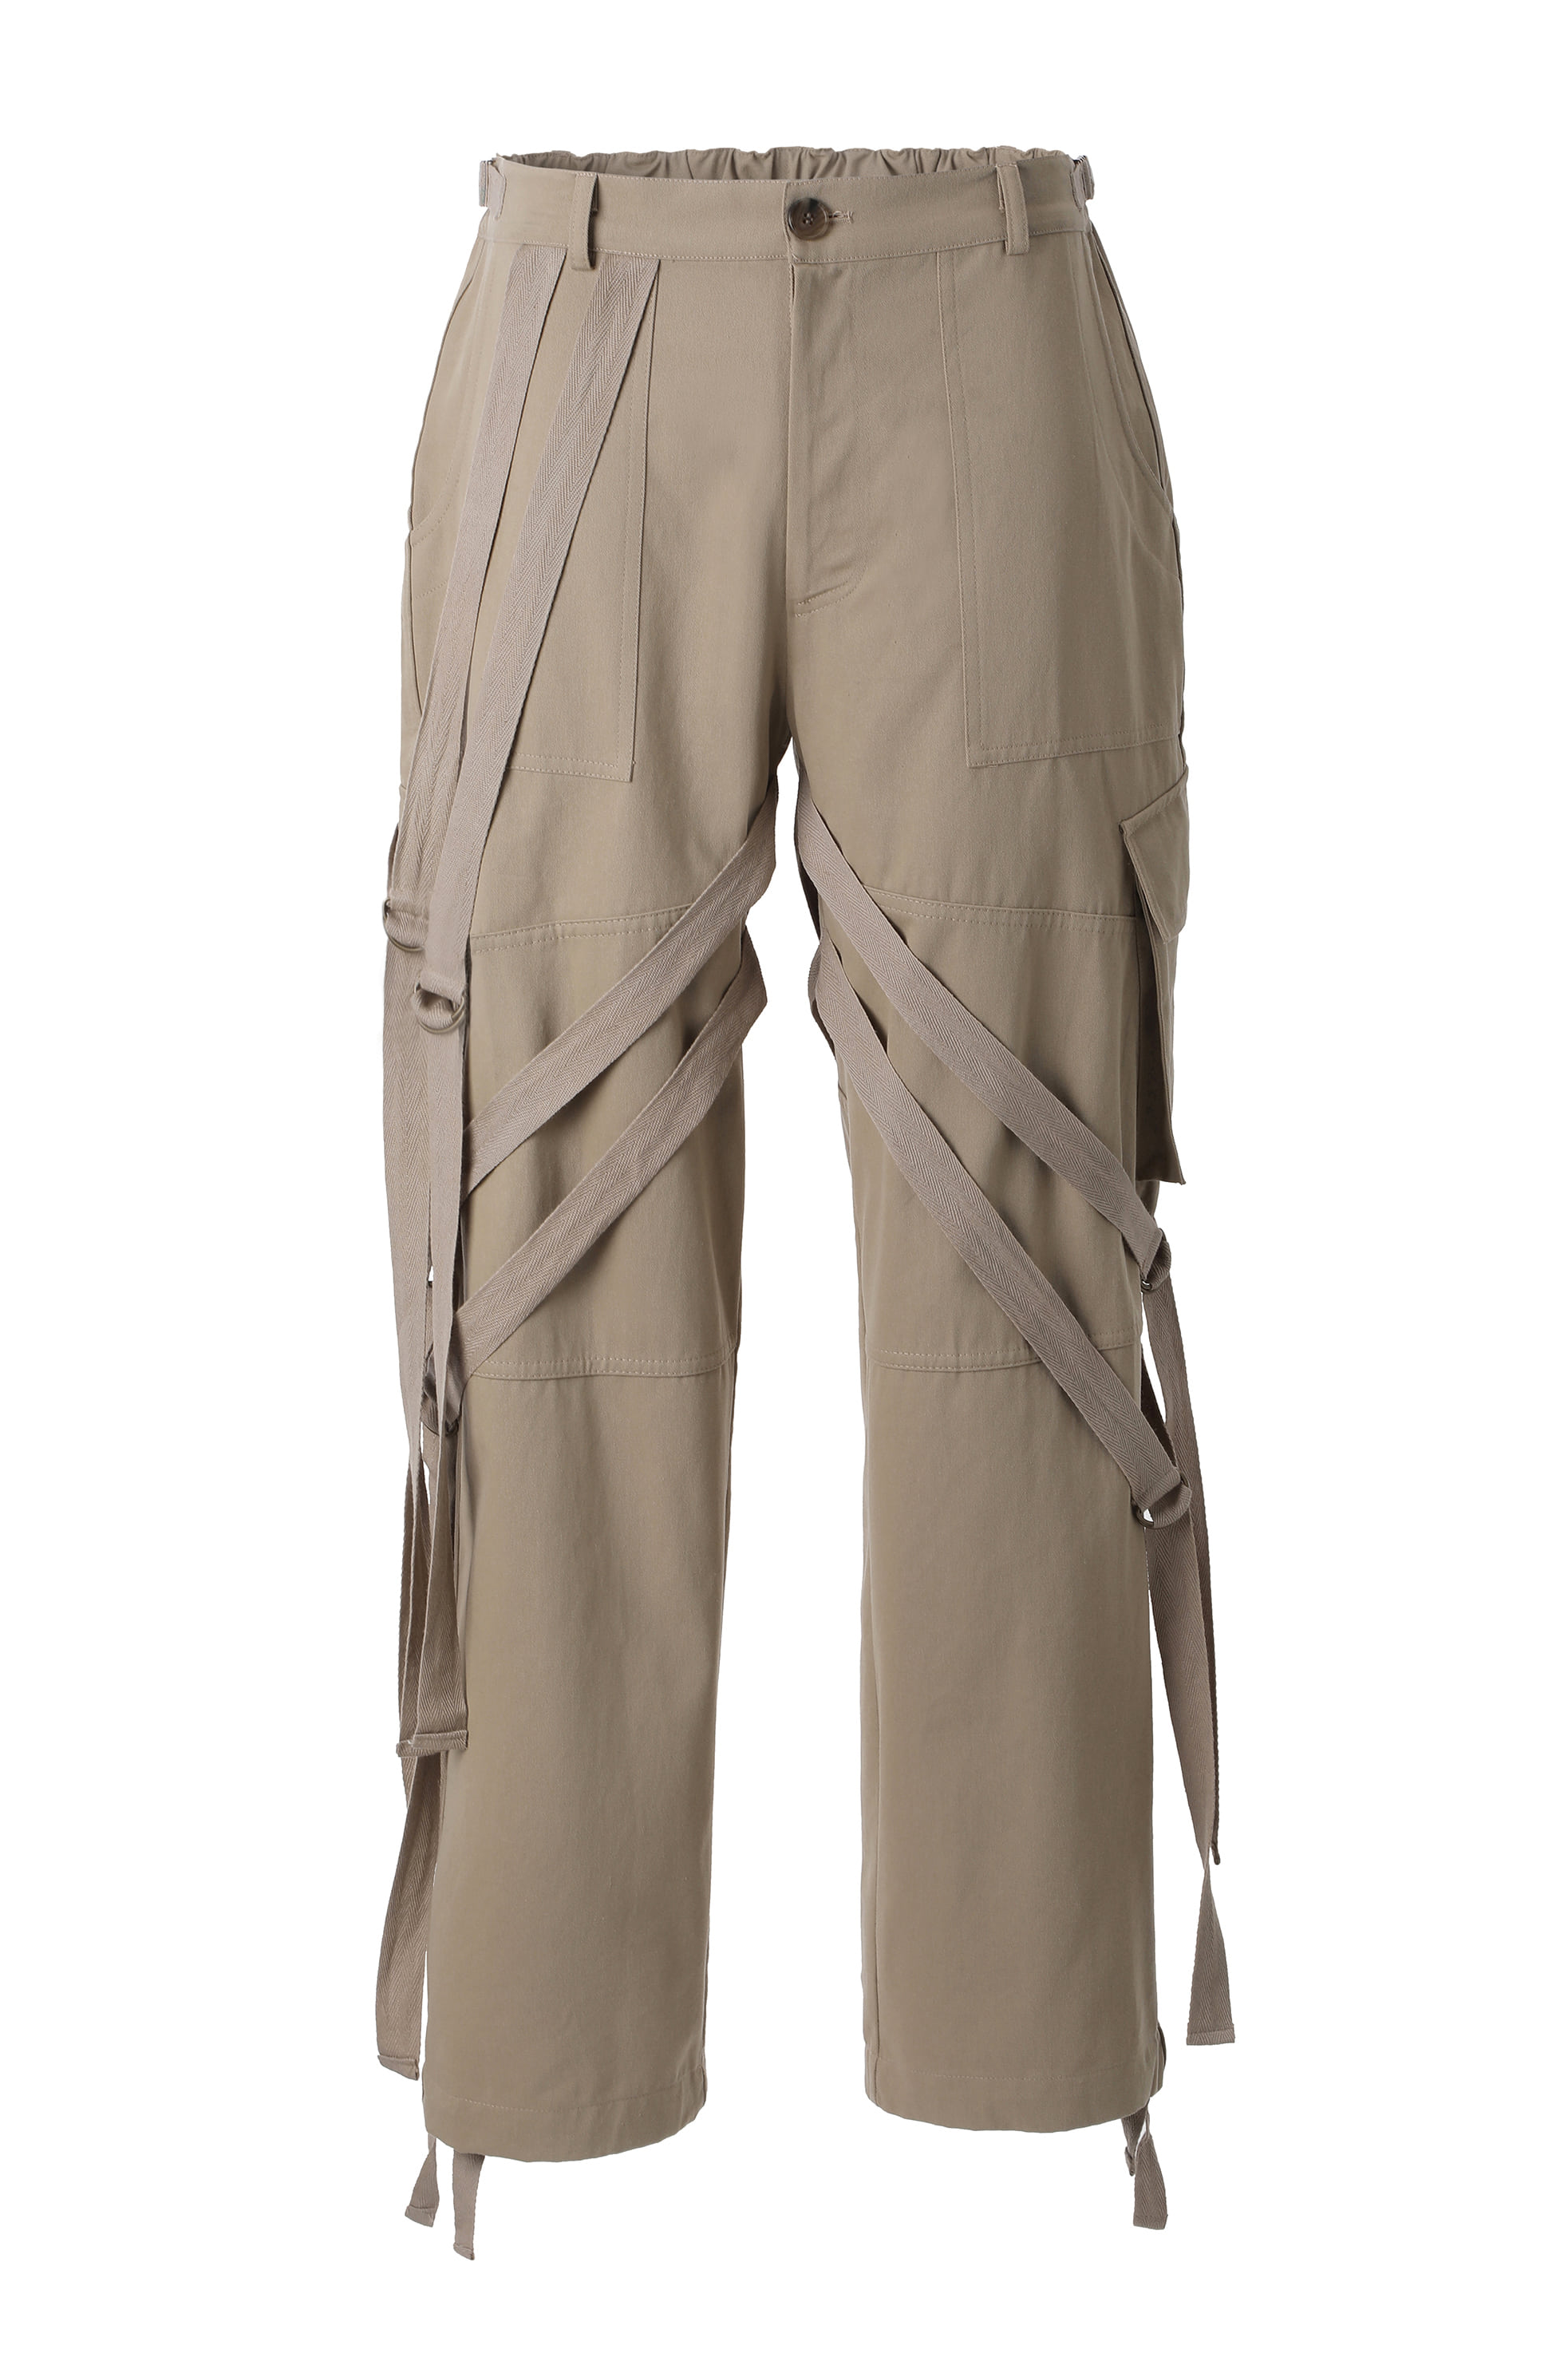 Amazon cargo trousers